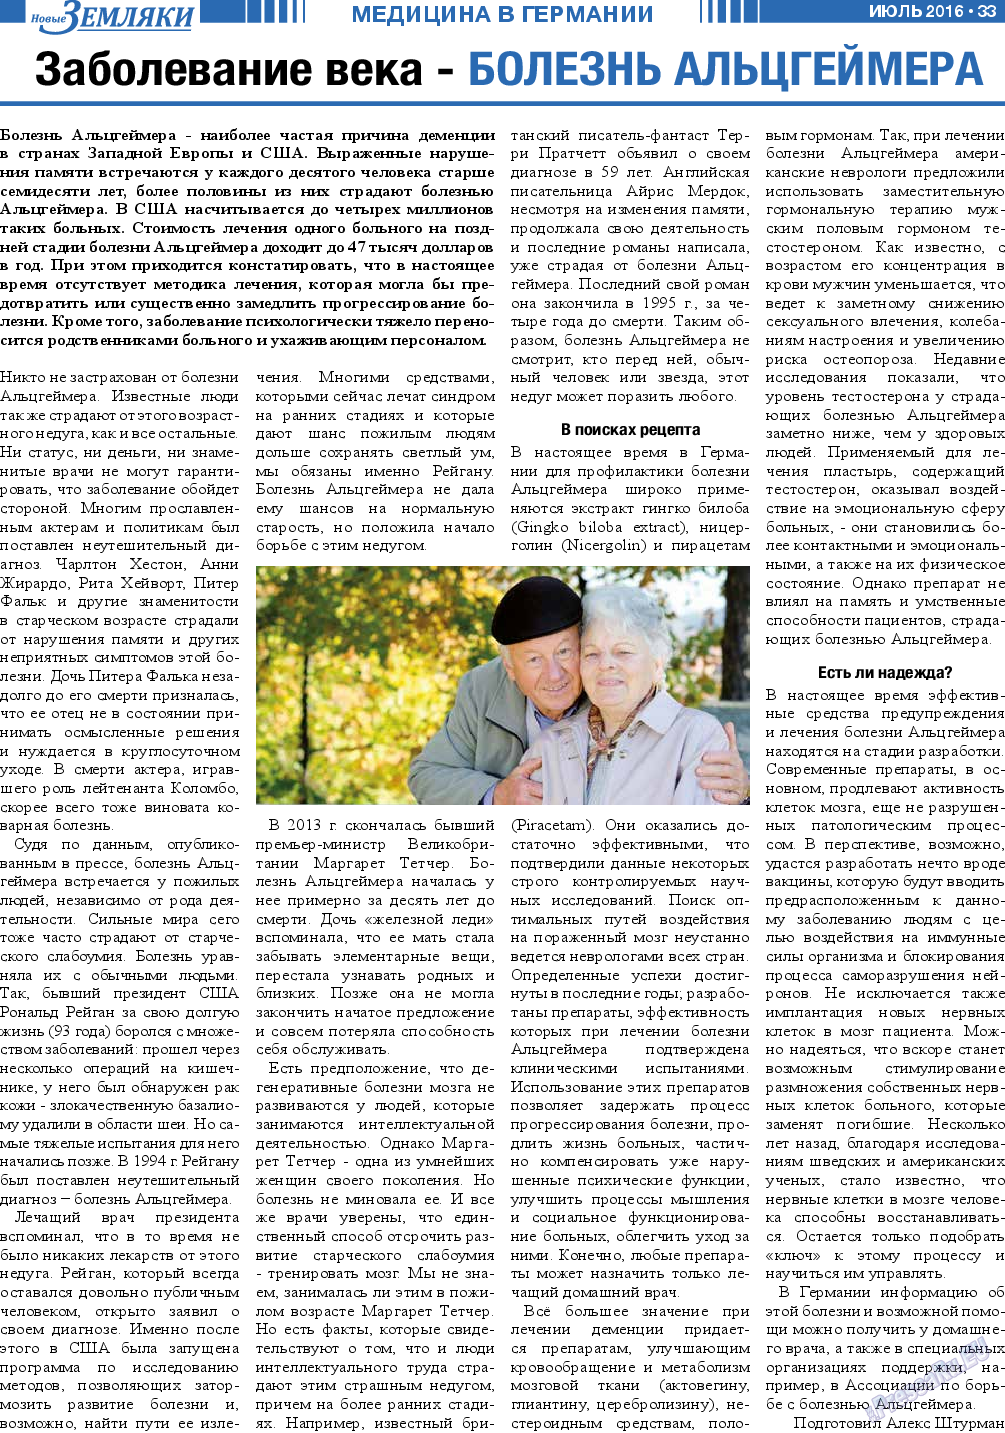 Новые Земляки, газета. 2016 №7 стр.33